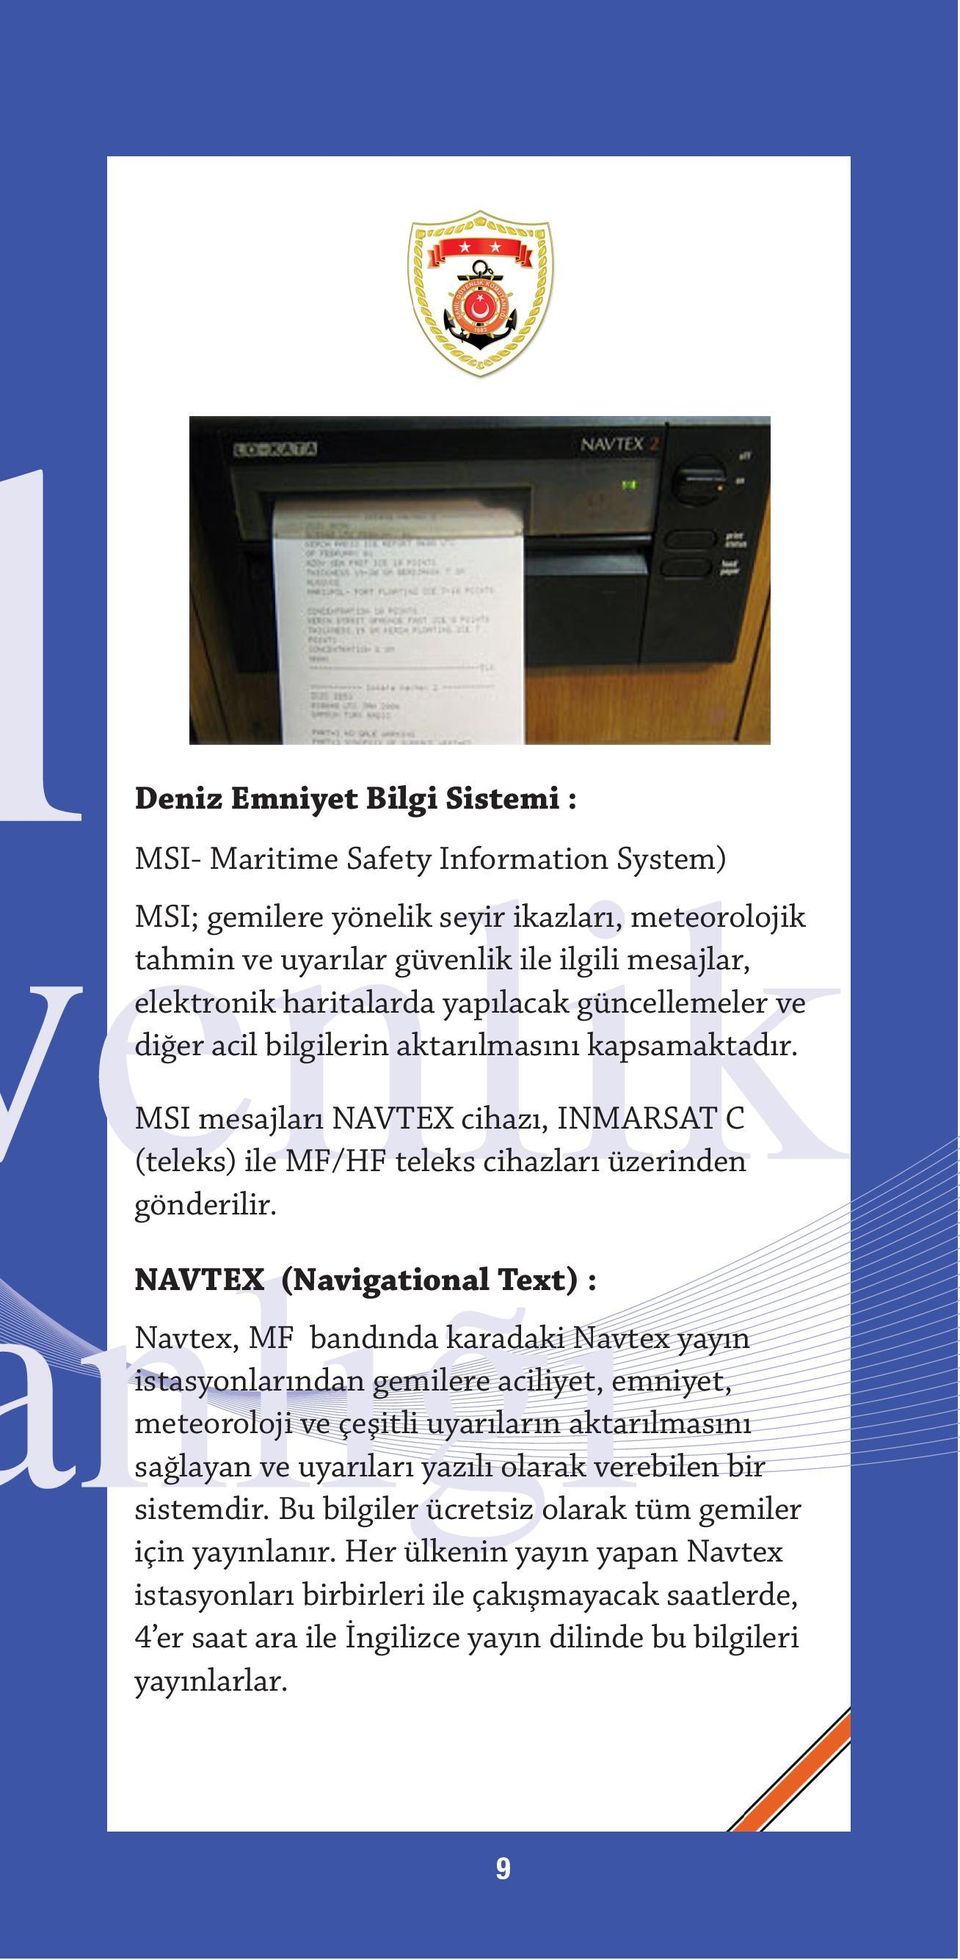 NAVTEX (Navigational Text) : Navtex, MF bandında karadaki Navtex yayın istasyonlarından gemilere aciliyet, emniyet, meteoroloji ve çeşitli uyarıların aktarılmasını sağlayan ve uyarıları yazılı olarak